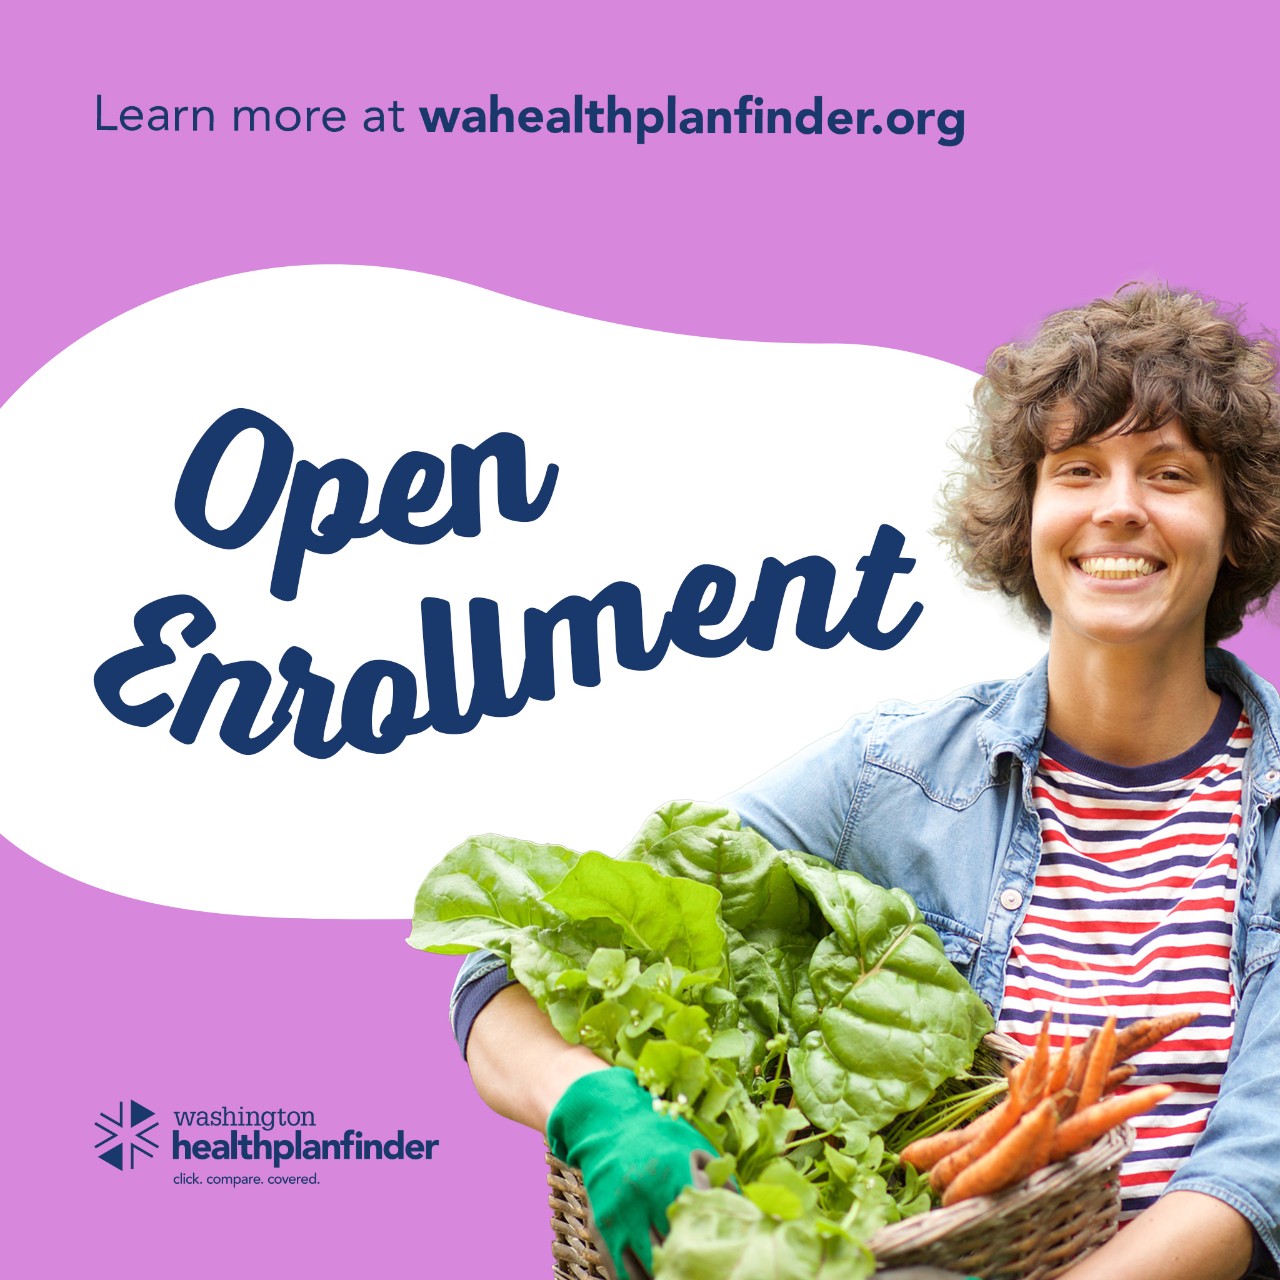 Learn more at wahealthplanfinder.org. Open Enrollment. Washington Healthplanfinder.